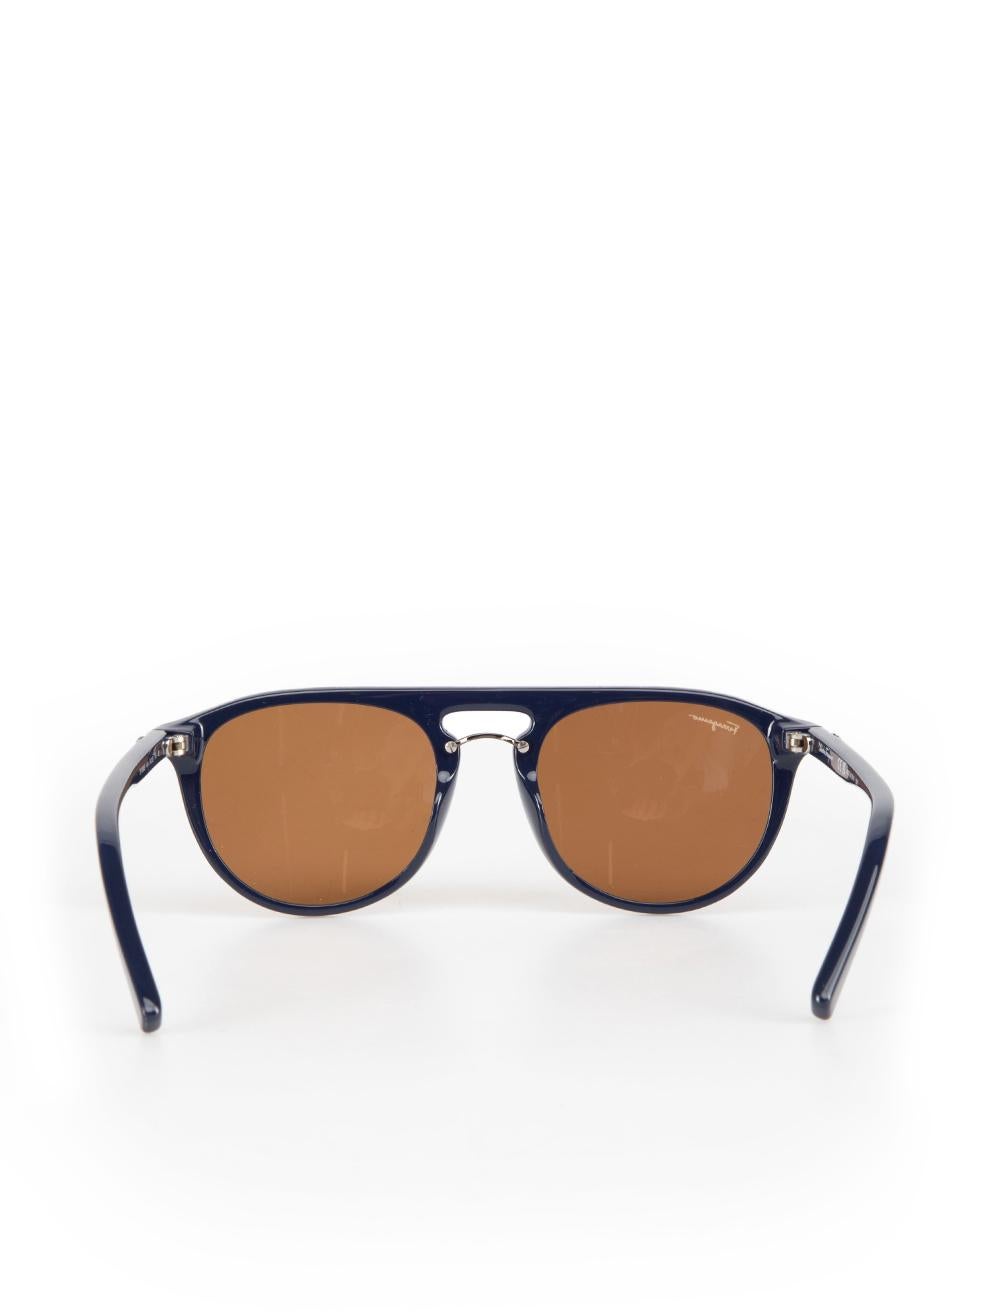 Salvatore Ferragamo Blue Aviator Amber Lens Sunglasses In New Condition For Sale In London, GB